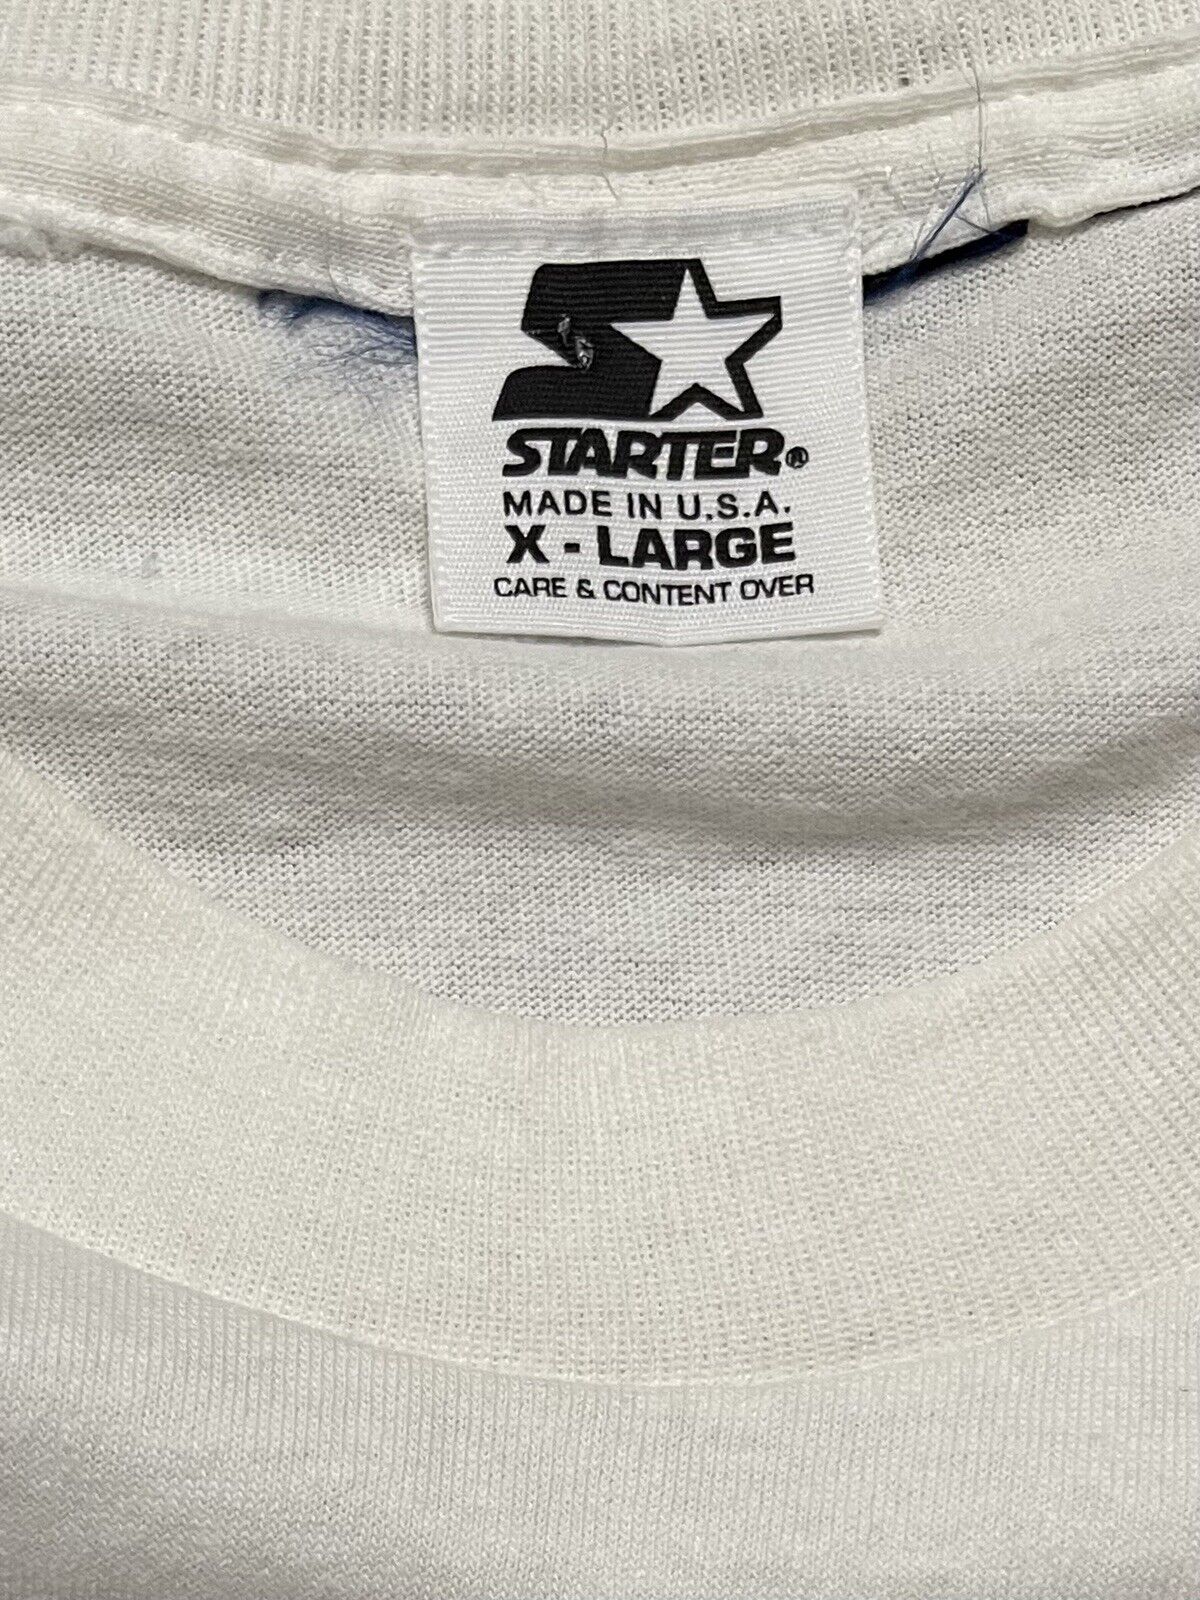 Vintage XL Signed Kris Draper 90s Stanley T Shirt… - image 4